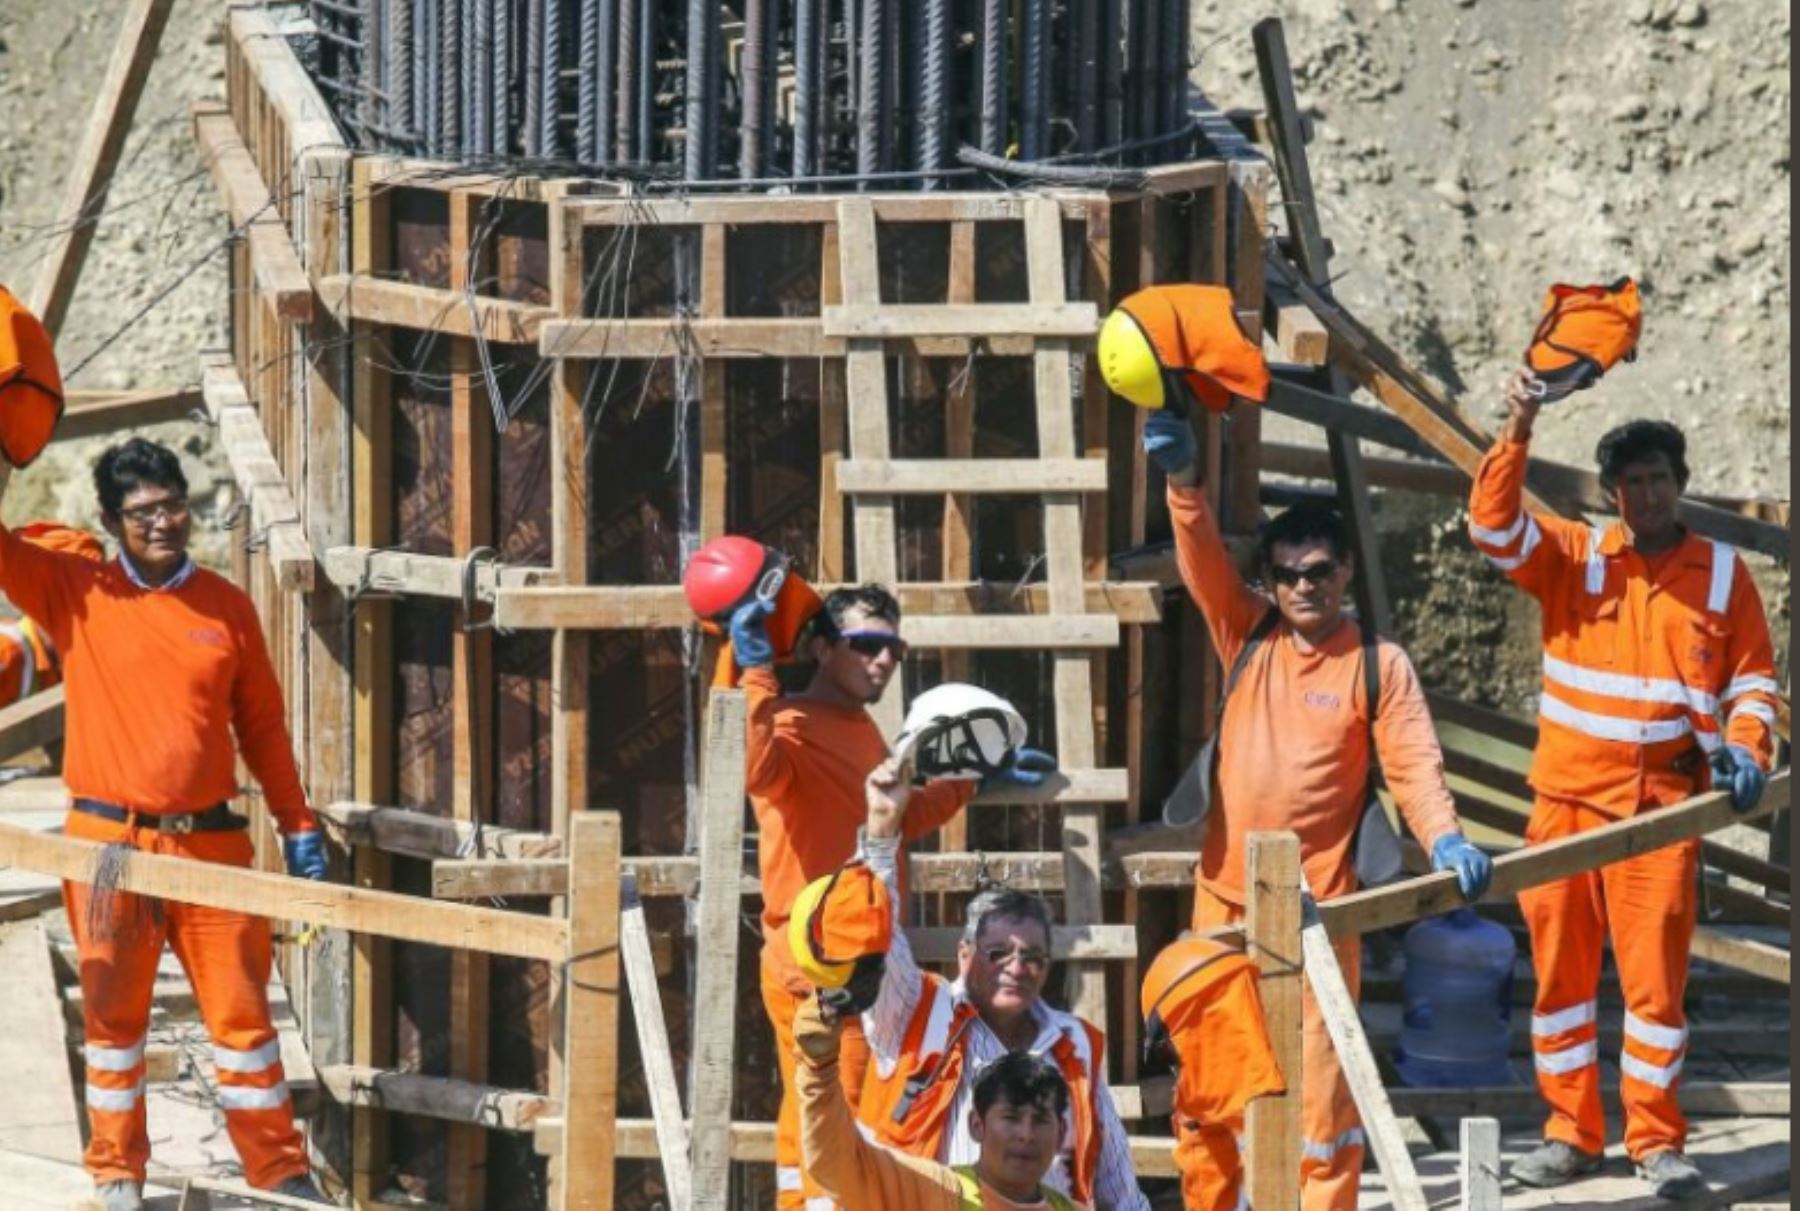 Avance de los trabajos en puente Venados, ubicado en el distrito de Lancones